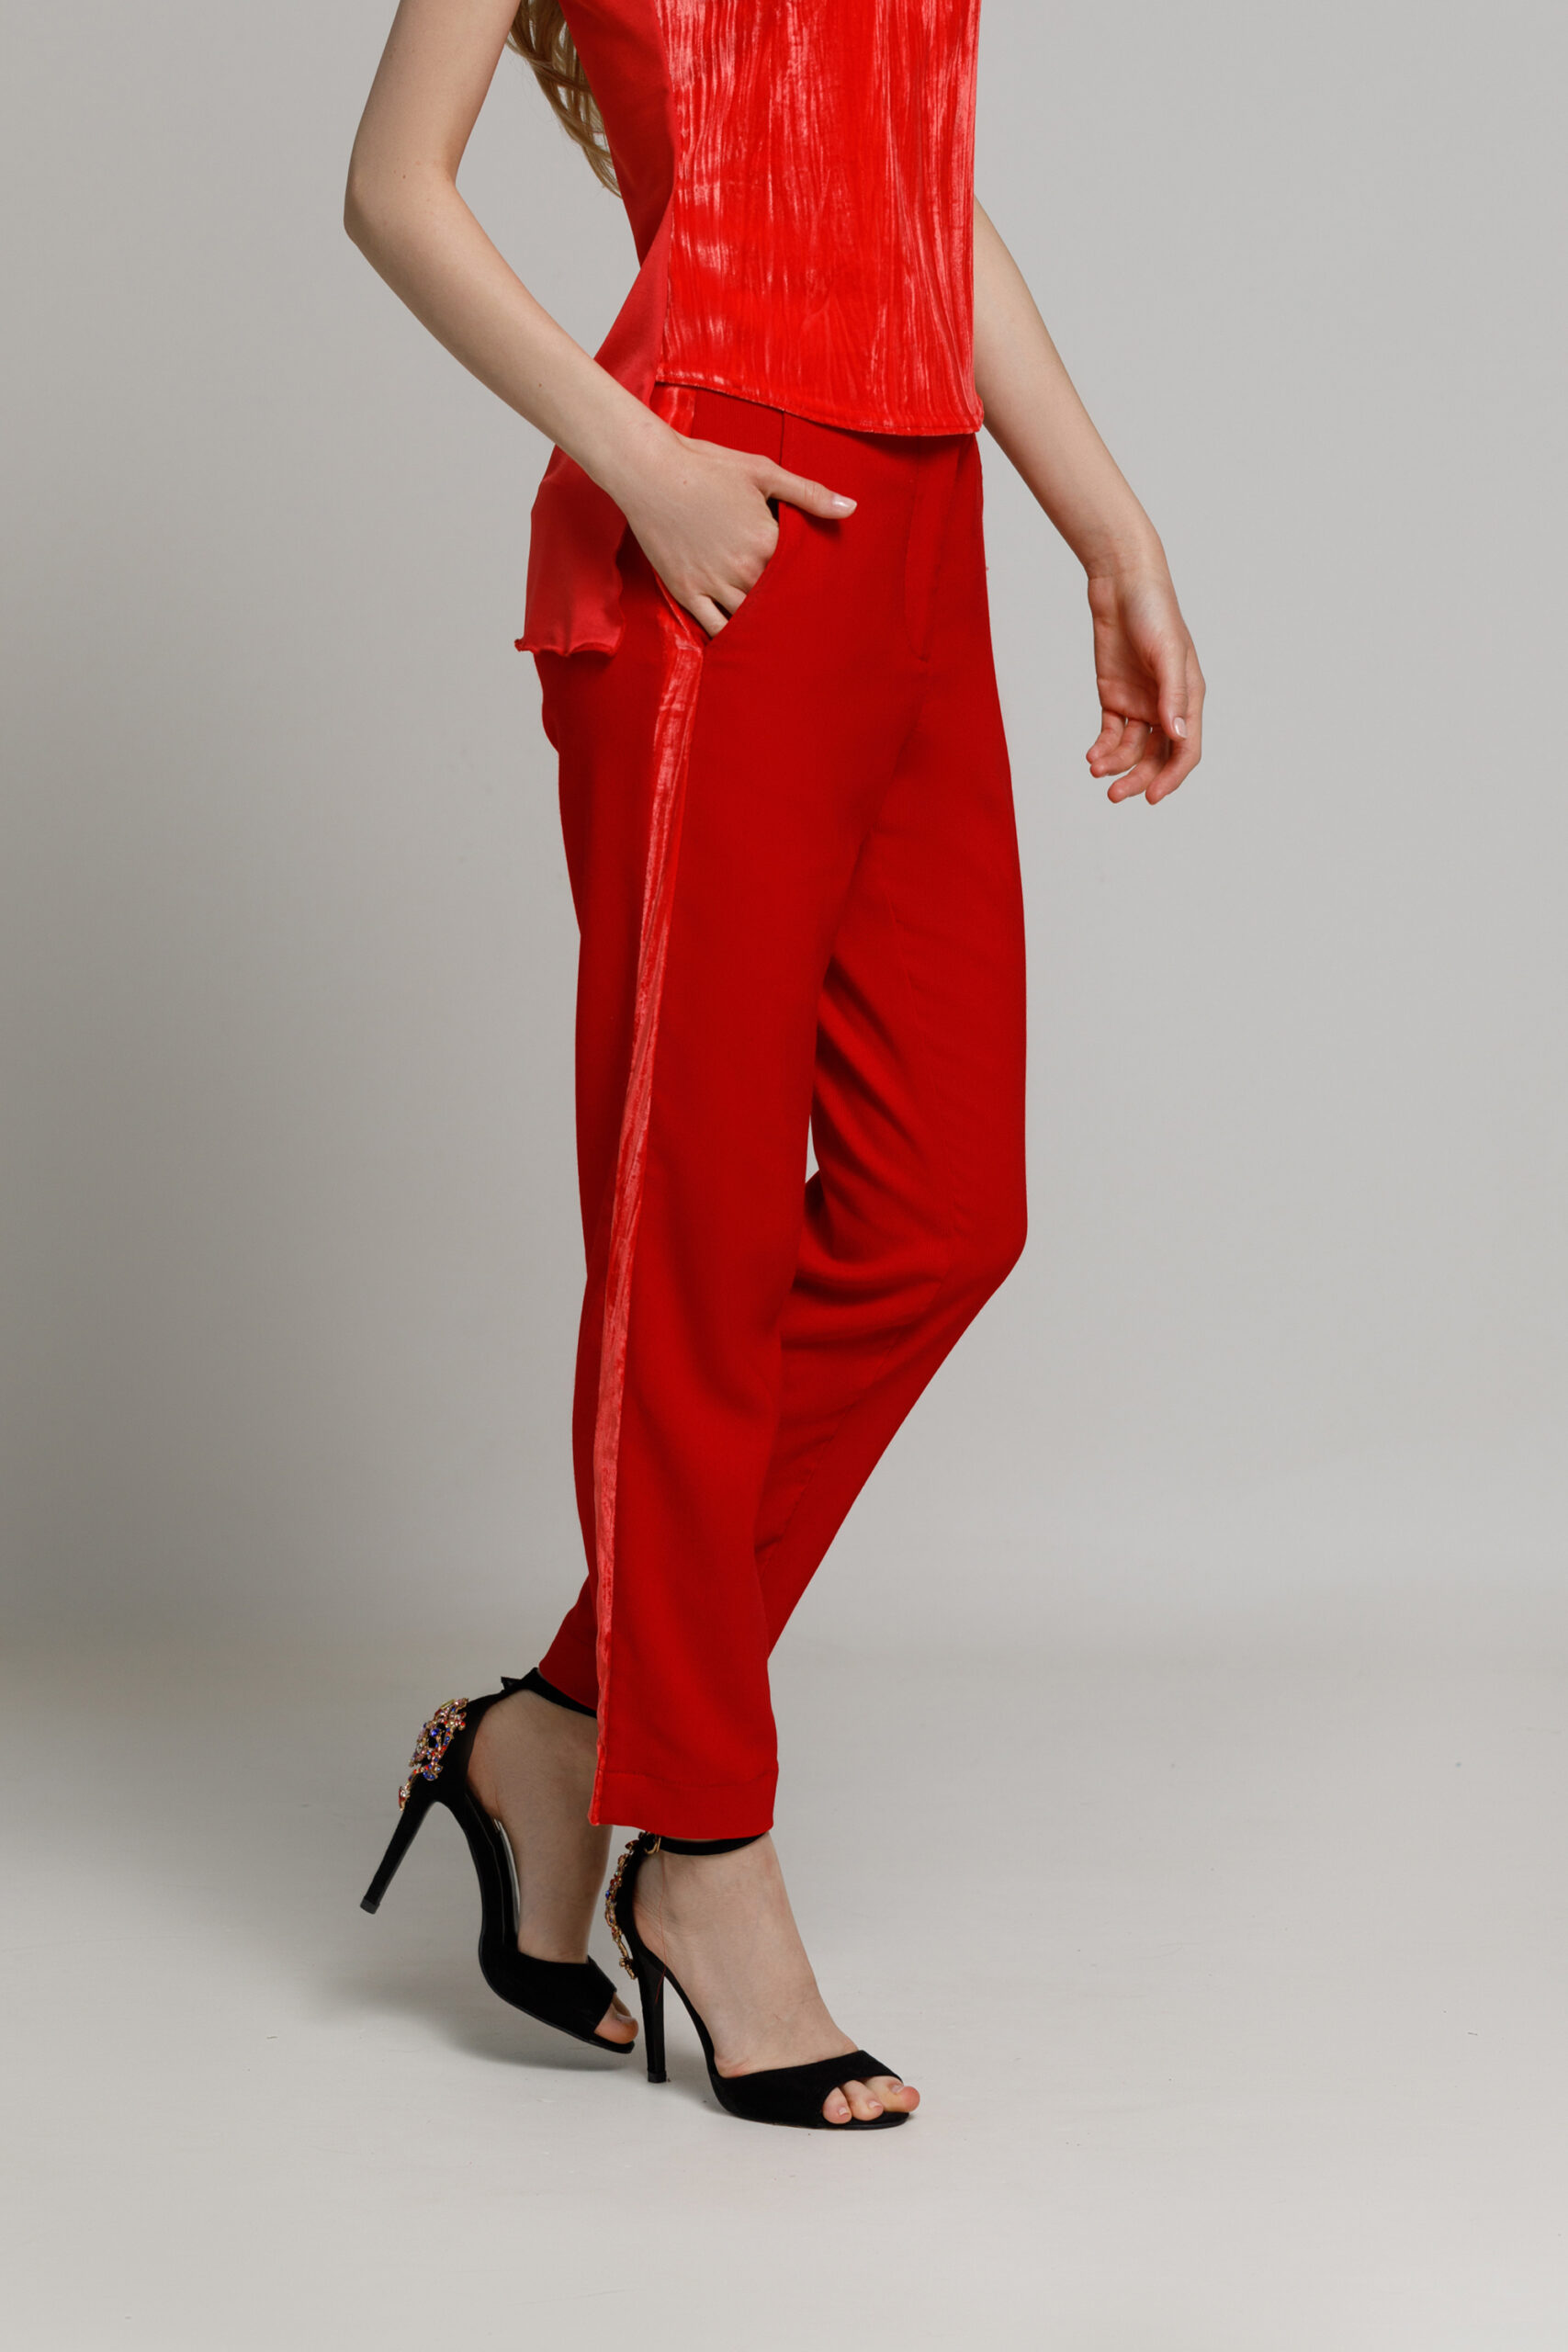 Pantalon FILIPO rosu cu banda laterala din catifea. Materiale naturale, design unicat, cu broderie si aplicatii handmade